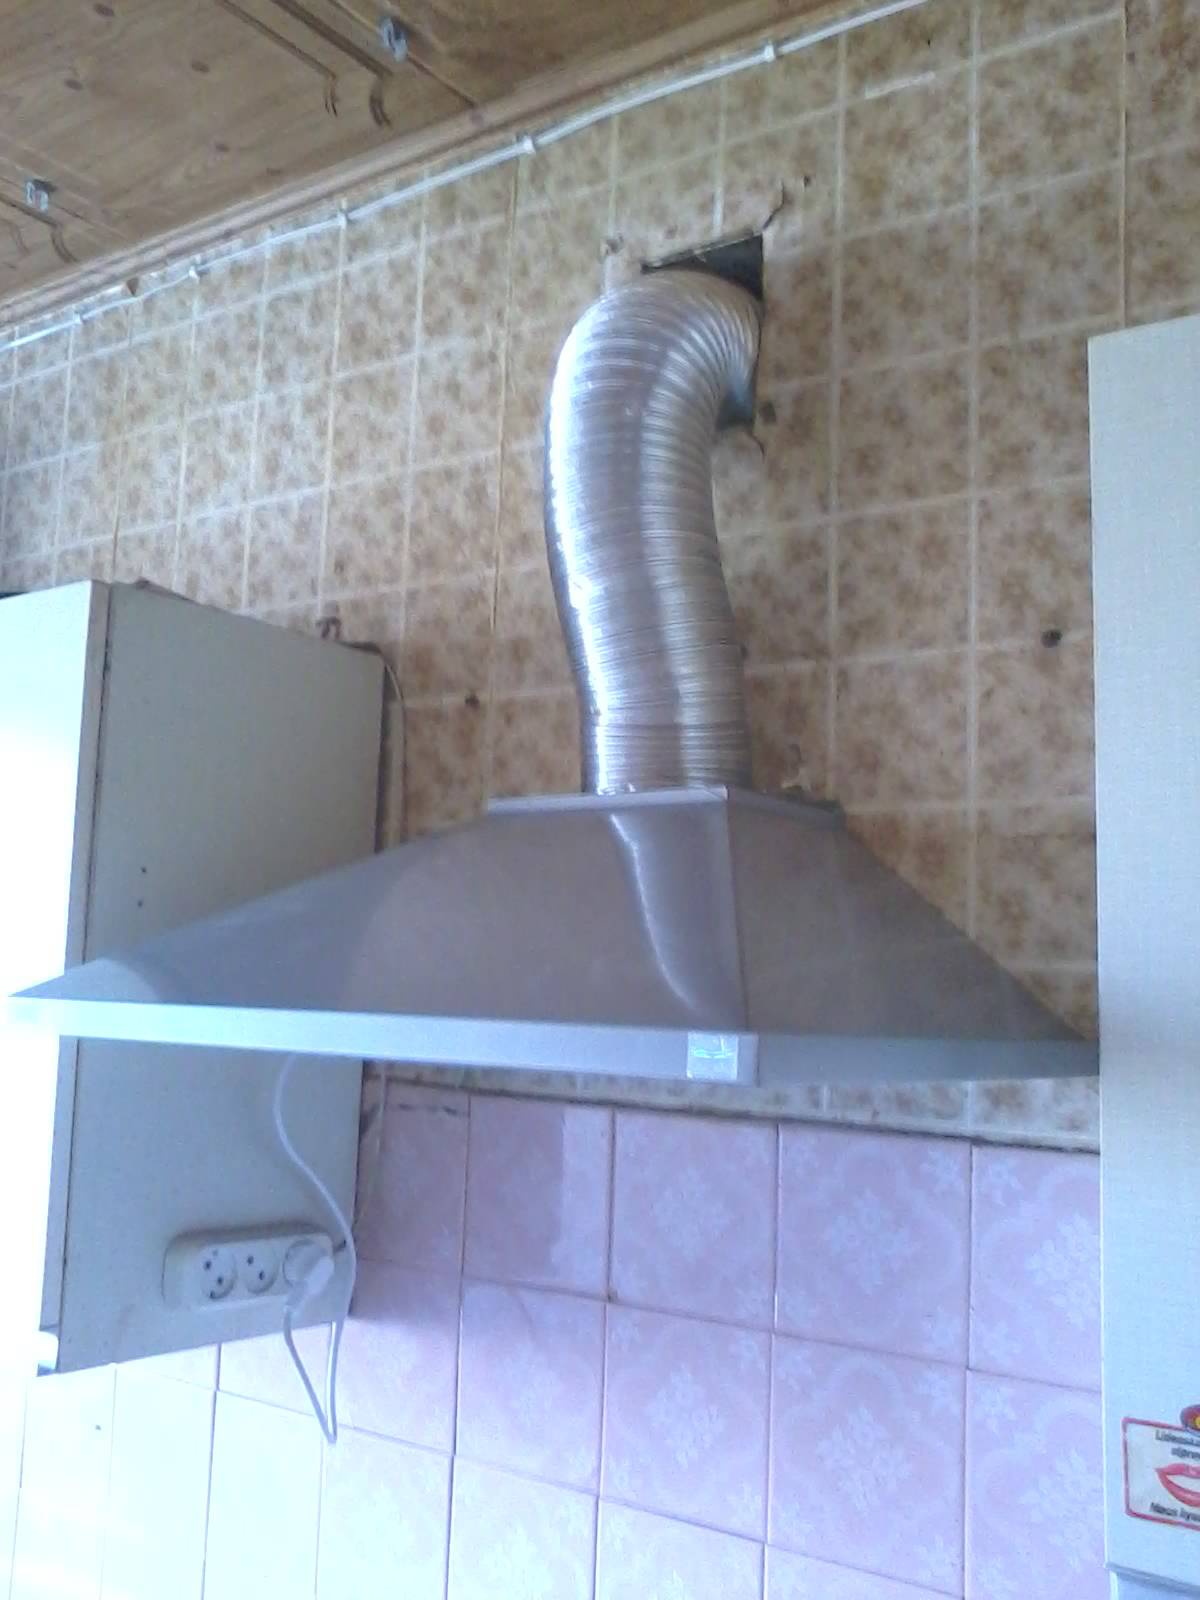 Вытяжная система вентиляции на кухне, вентиляция газовой плиты: монтаж, требования, расчет